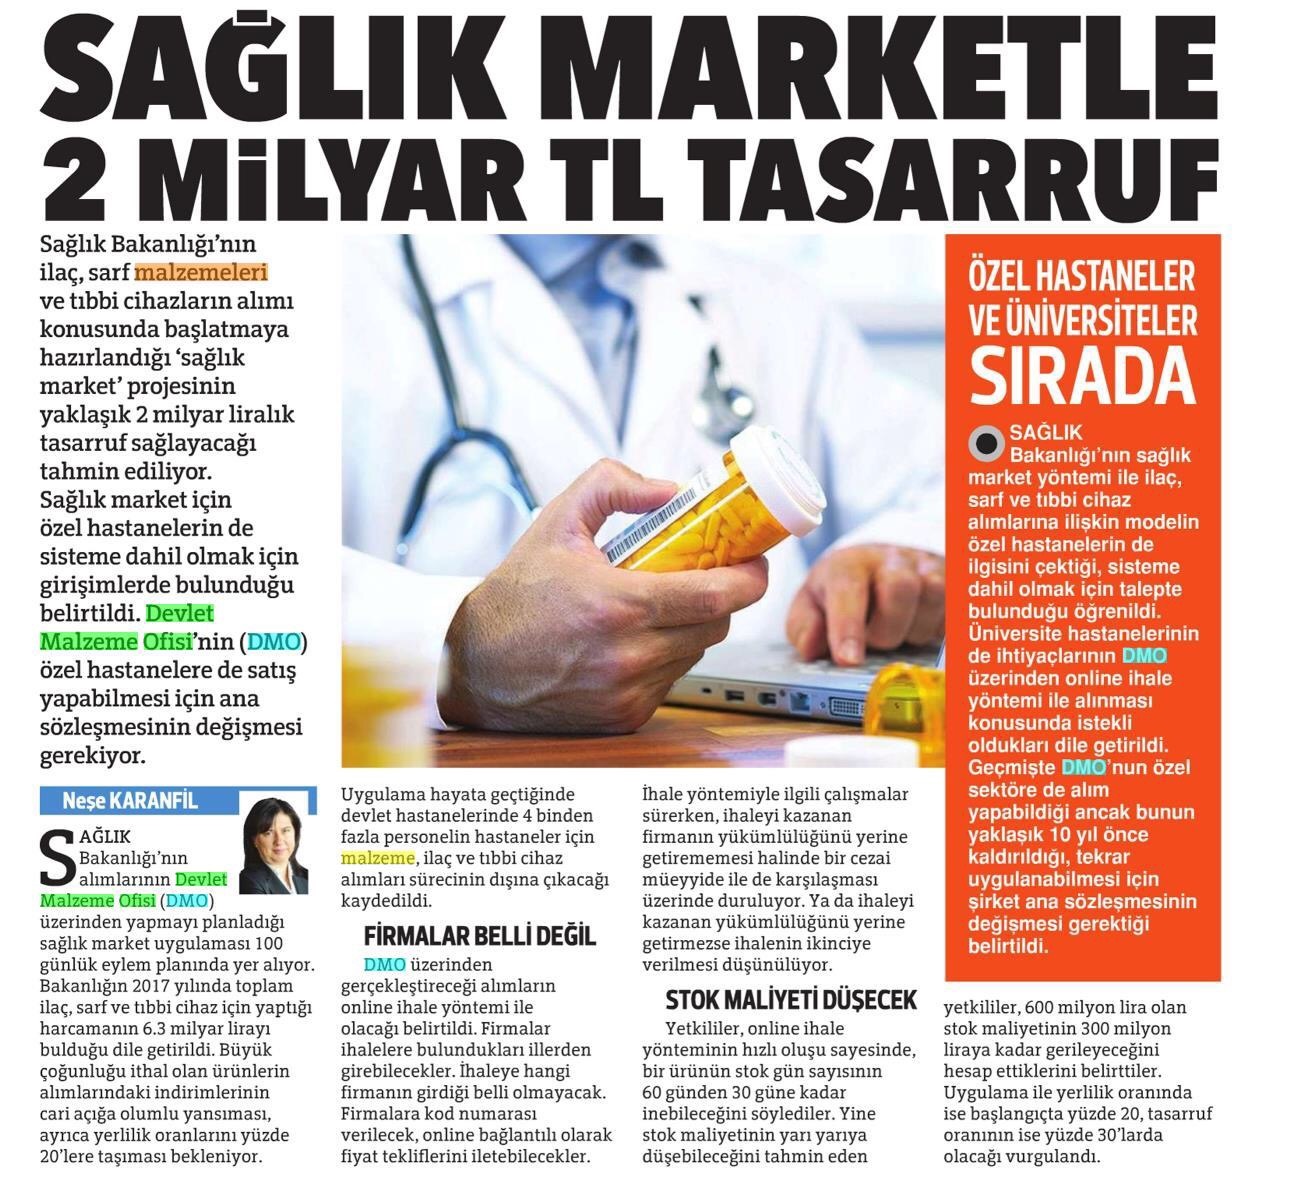 Hürriyet-Sağlık Market'le 2 Milyar TL Tasarruf-09.09.18